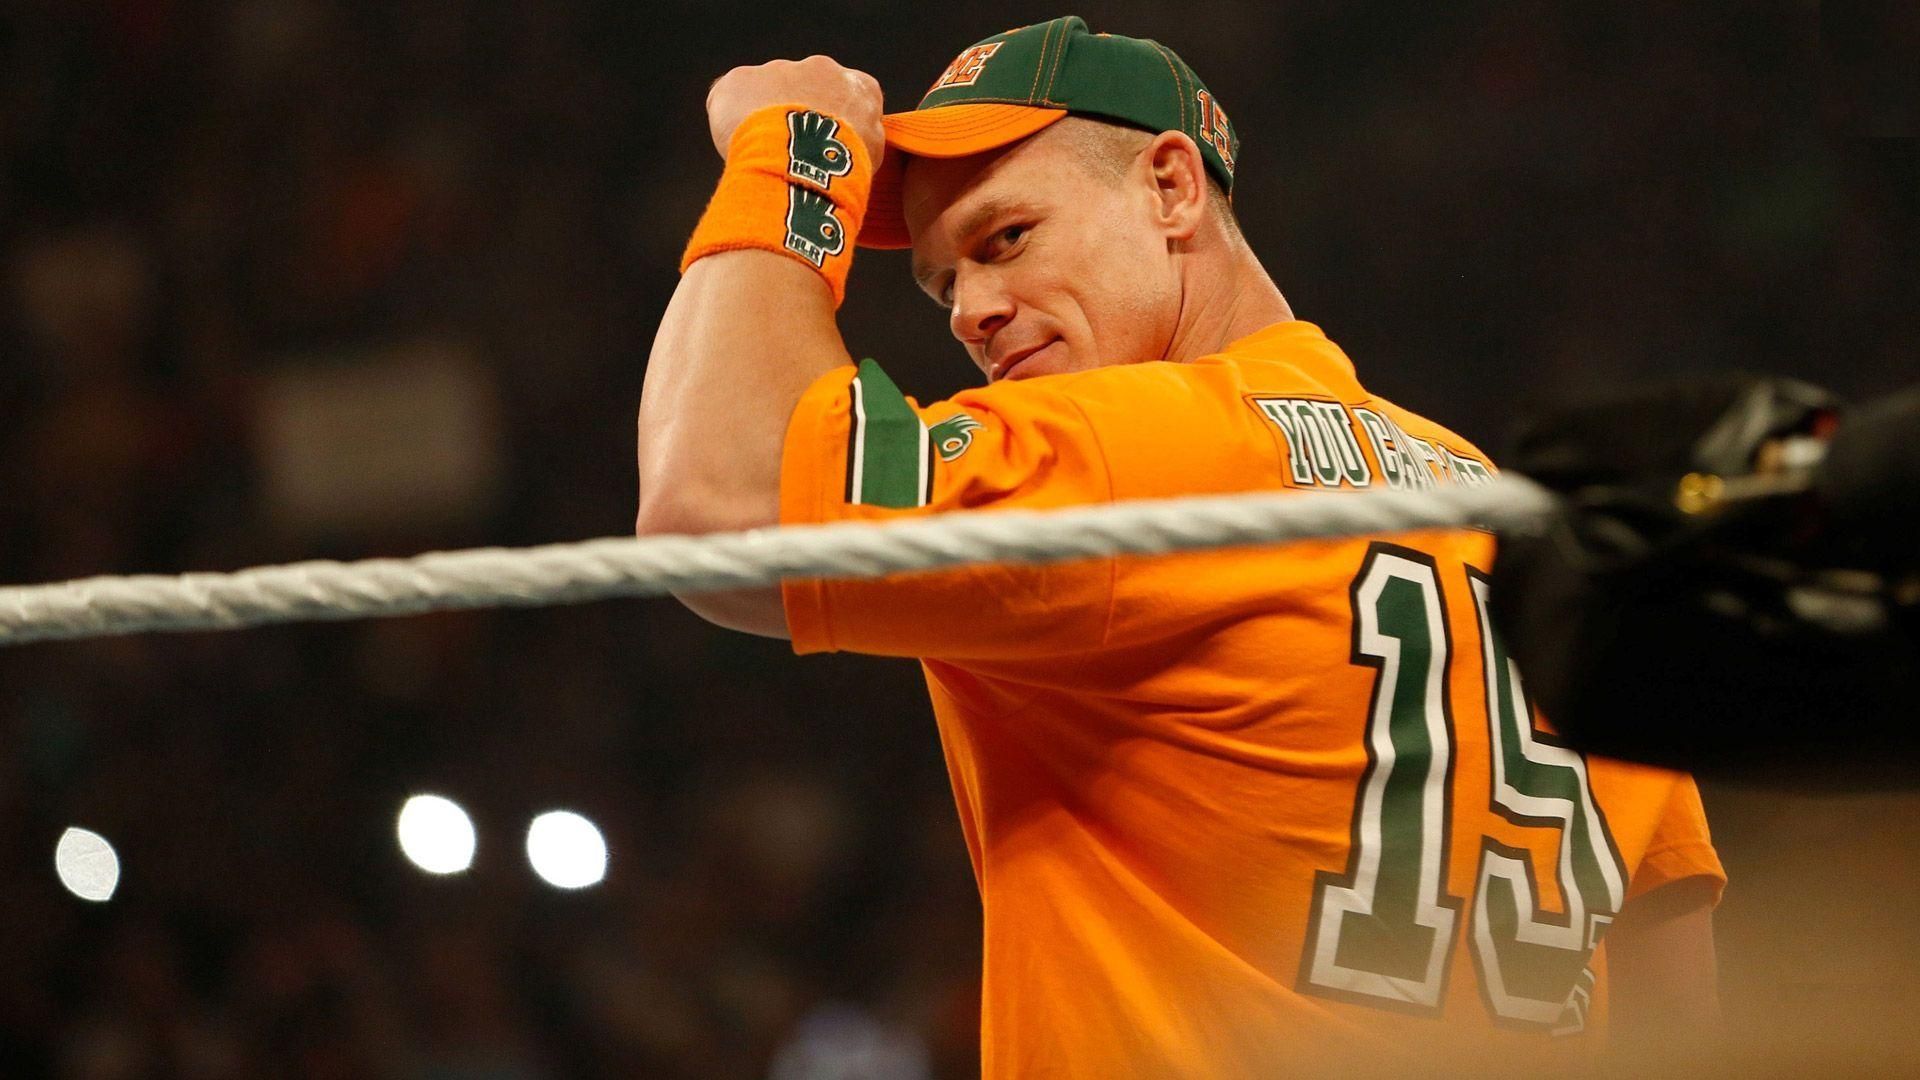 John Cena will return on June 27.